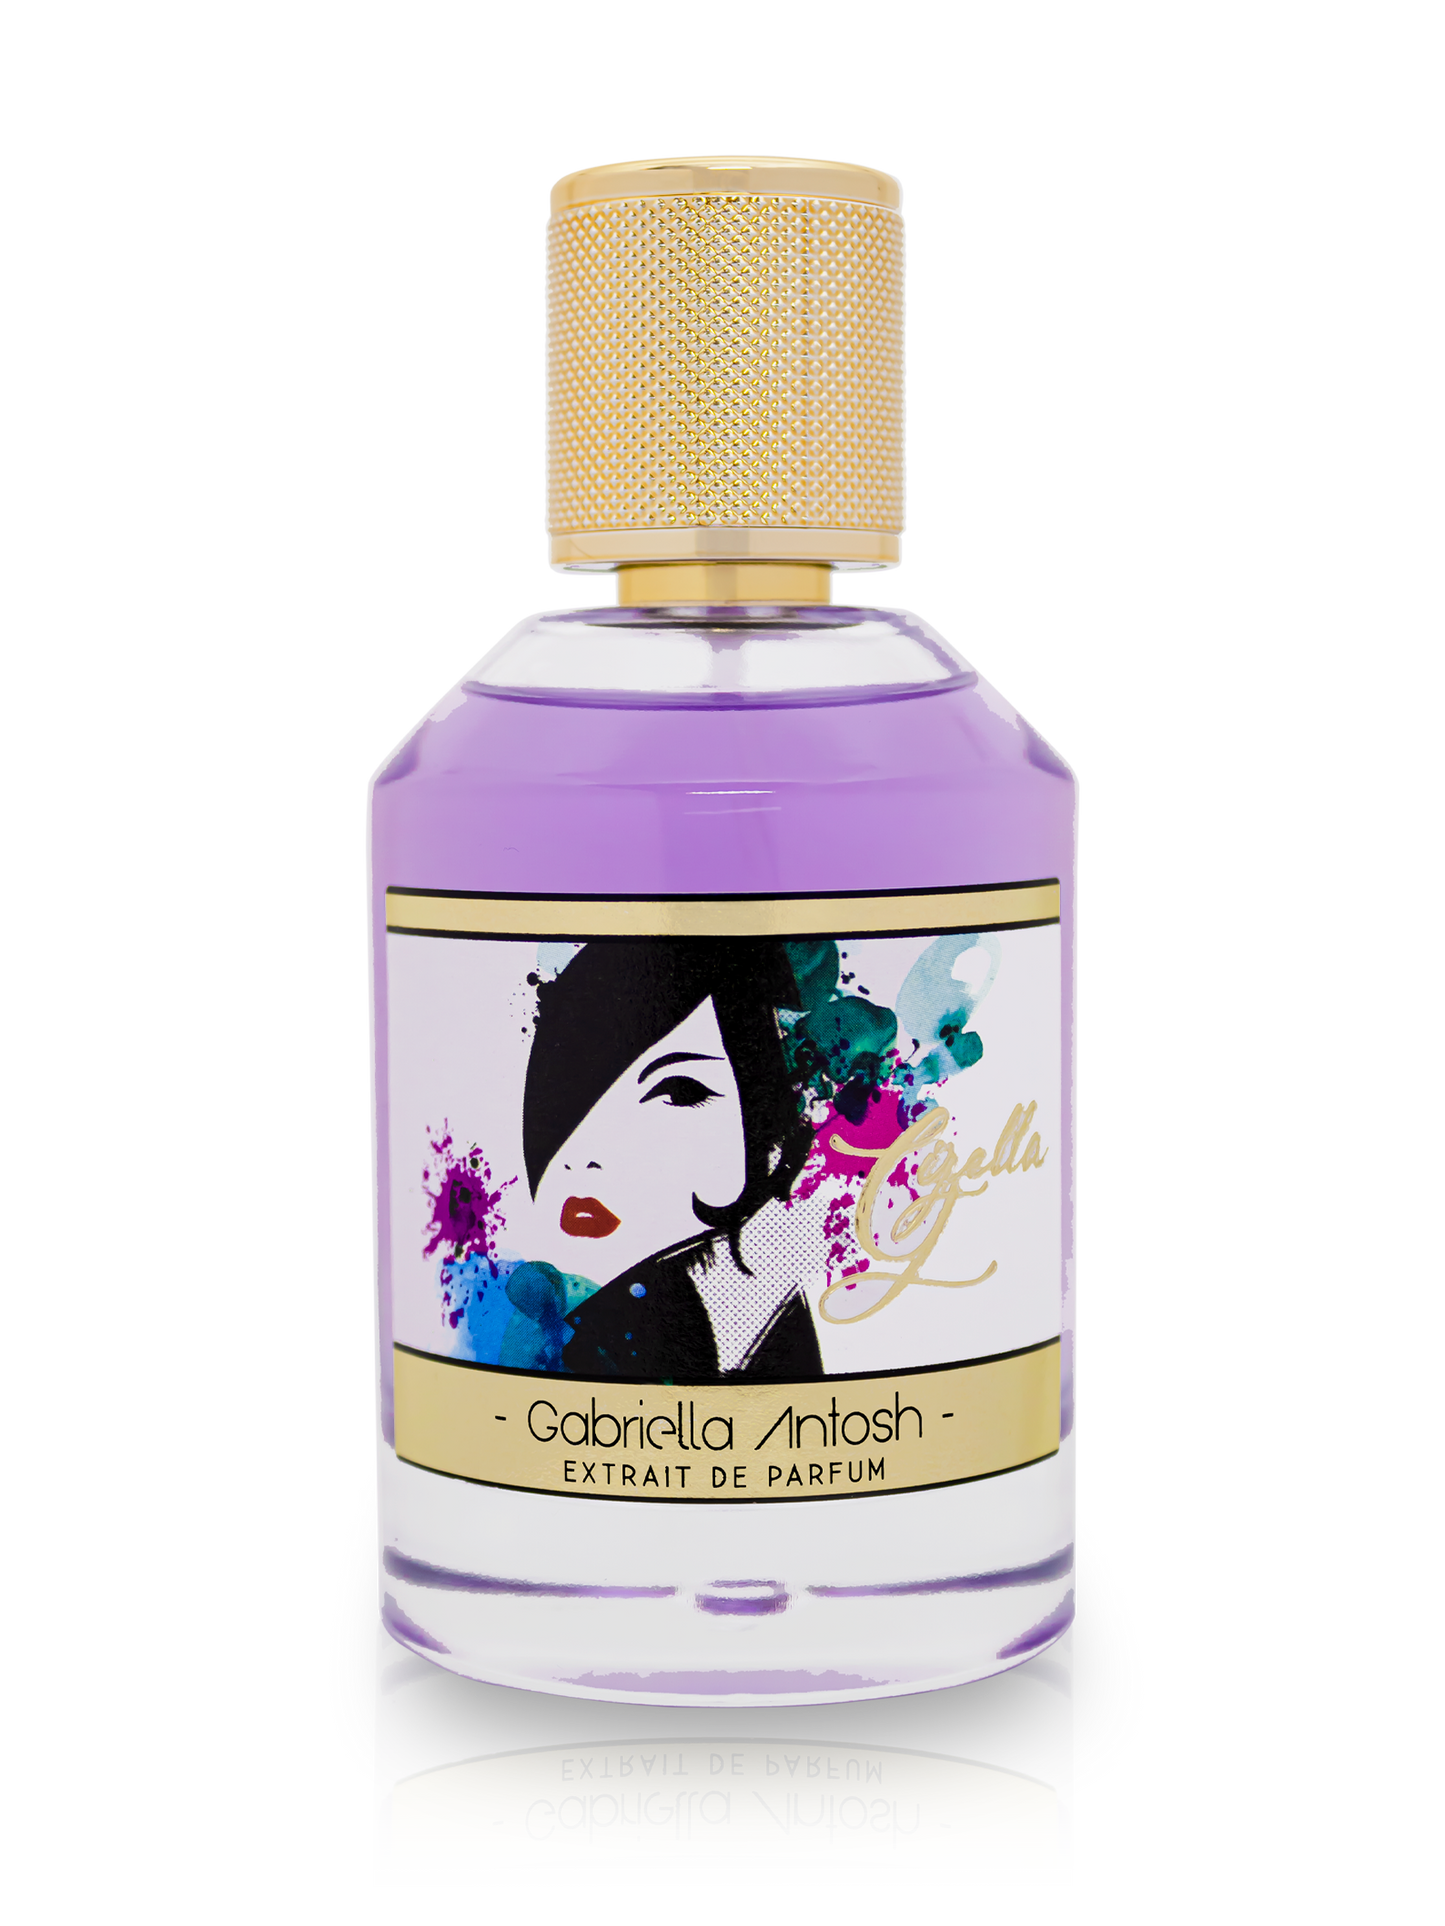 Gizella Extrait de Parfum for Women